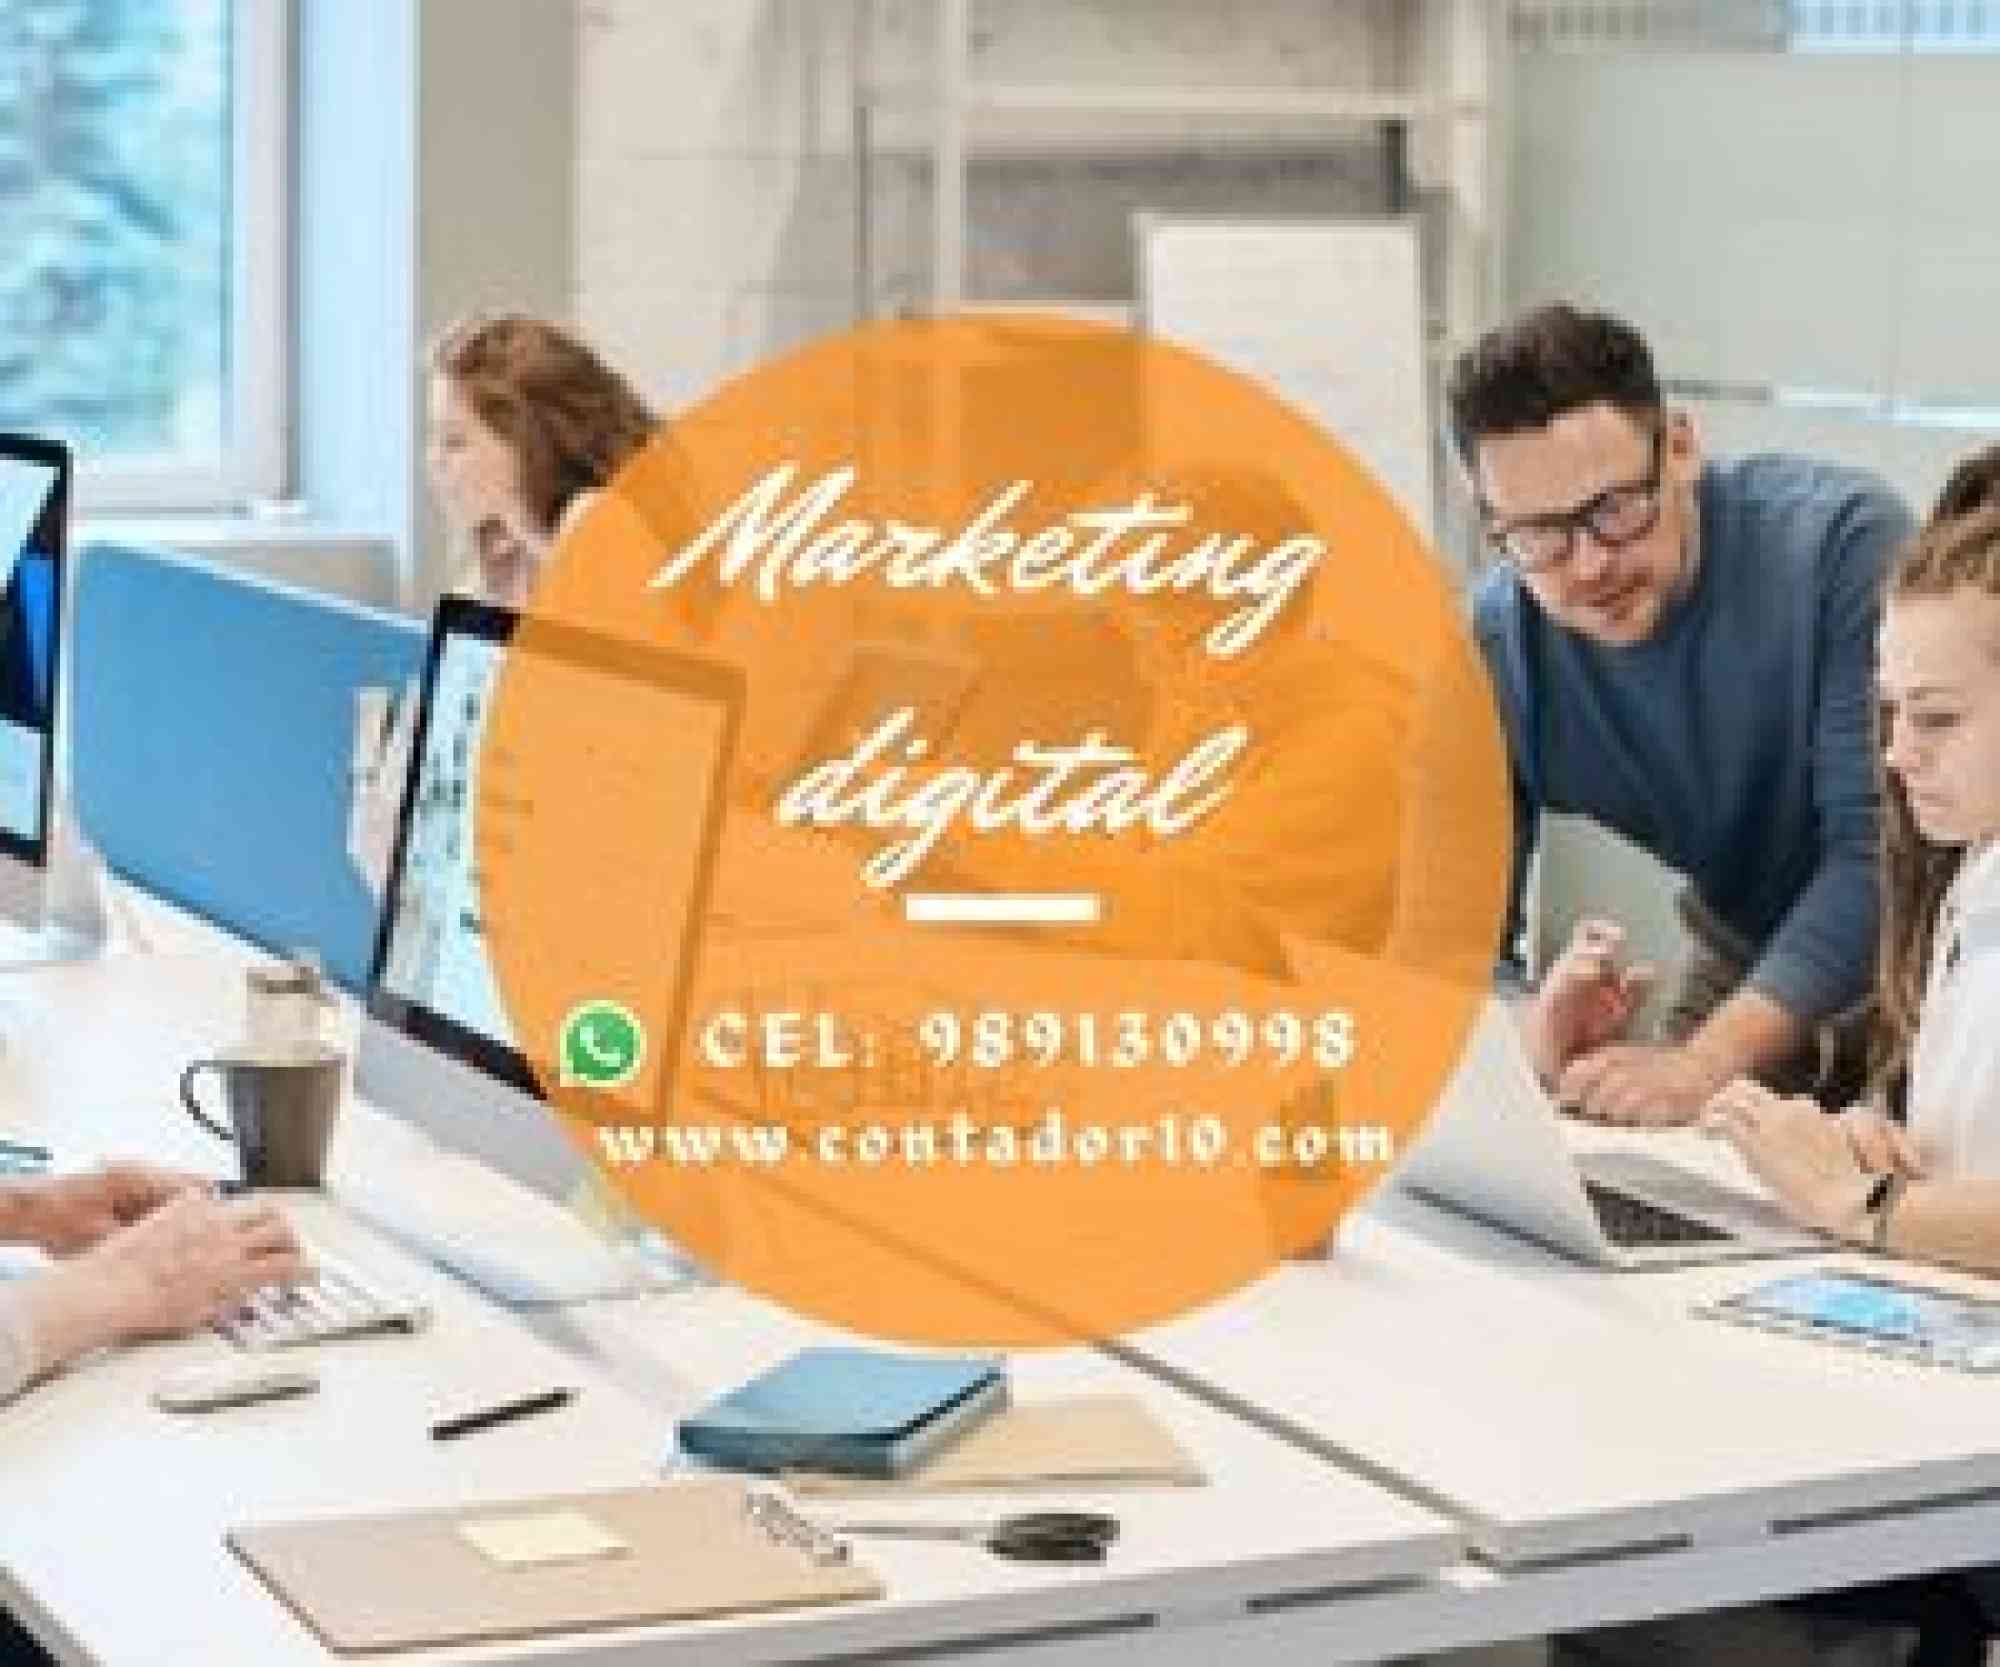 Servicios de Marketing Digital